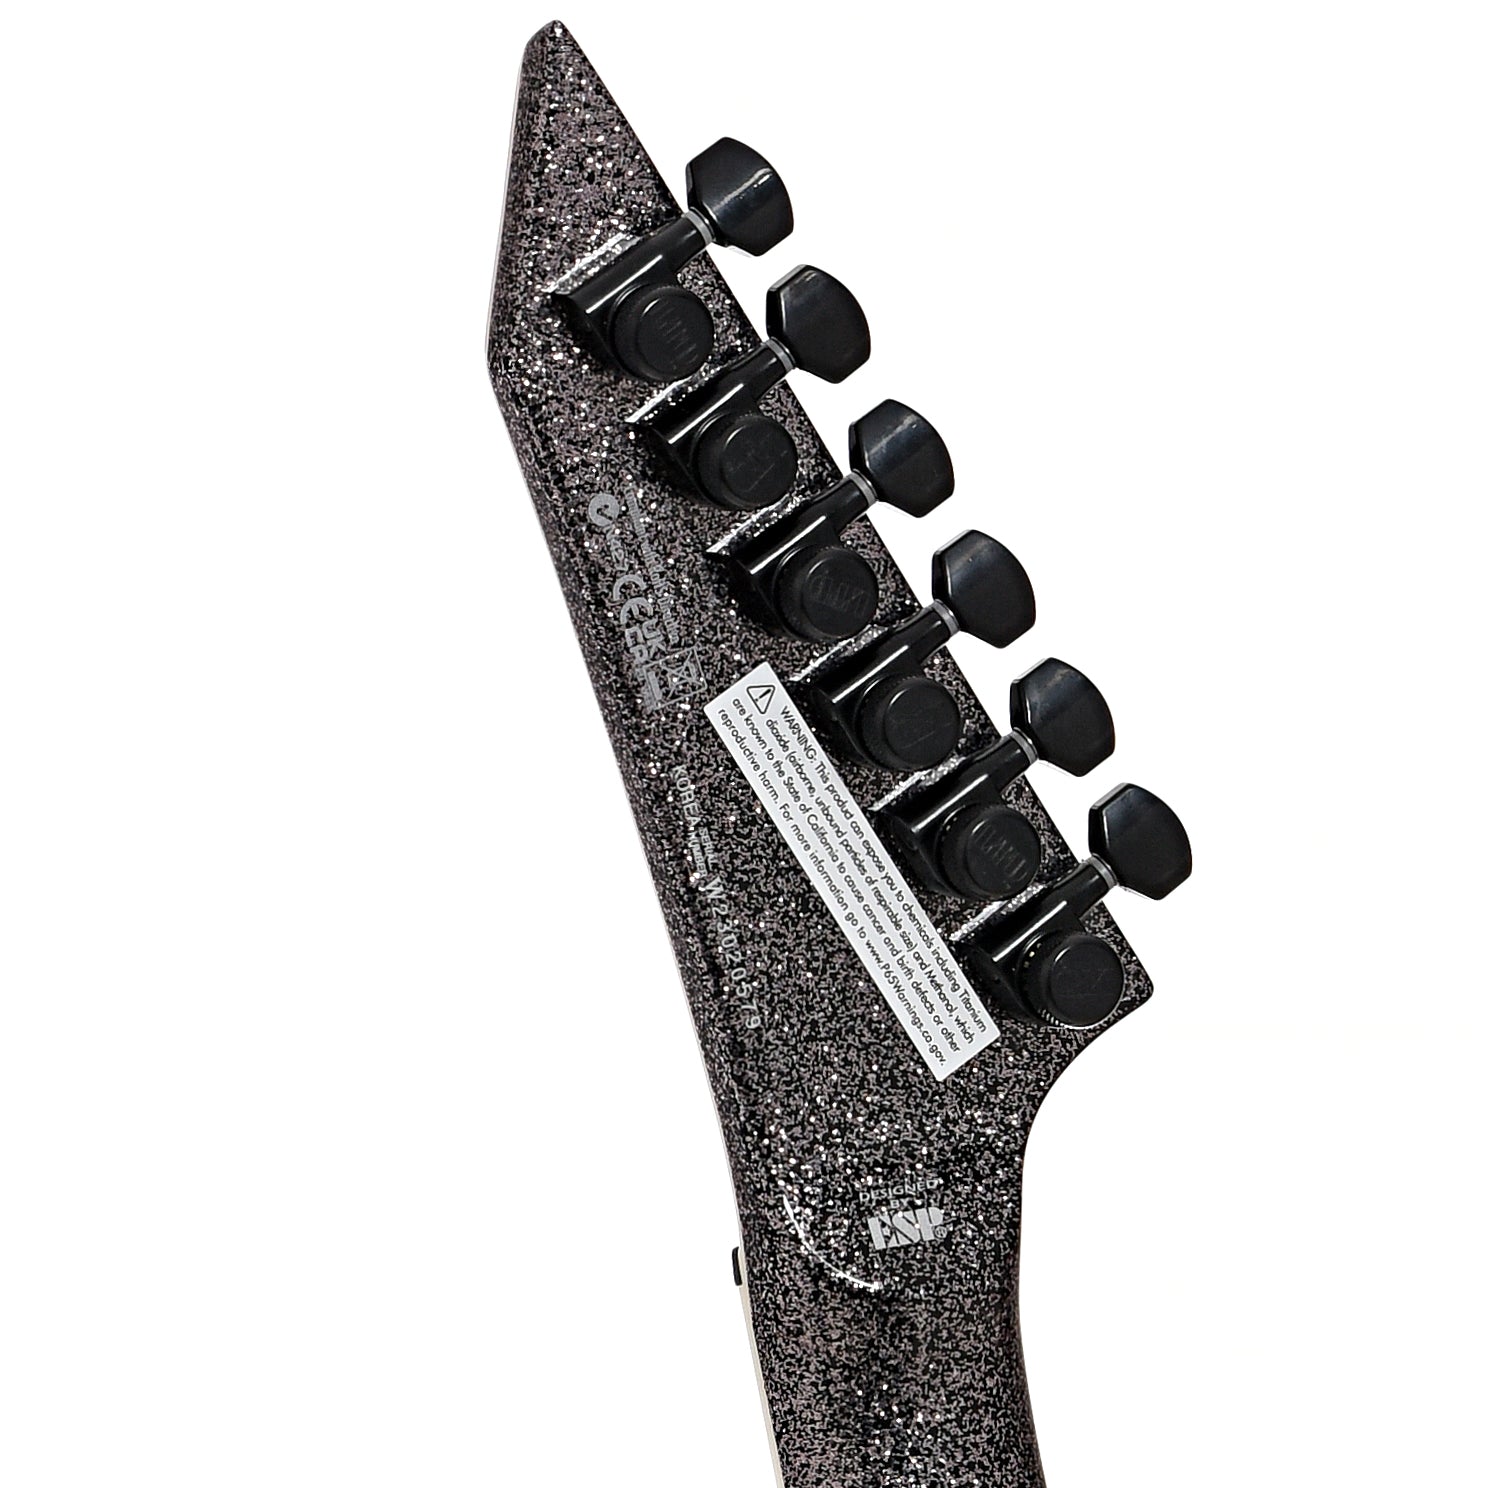 ESP LTD KH-V Electric Guitar, Black Sparkle – Elderly Instruments